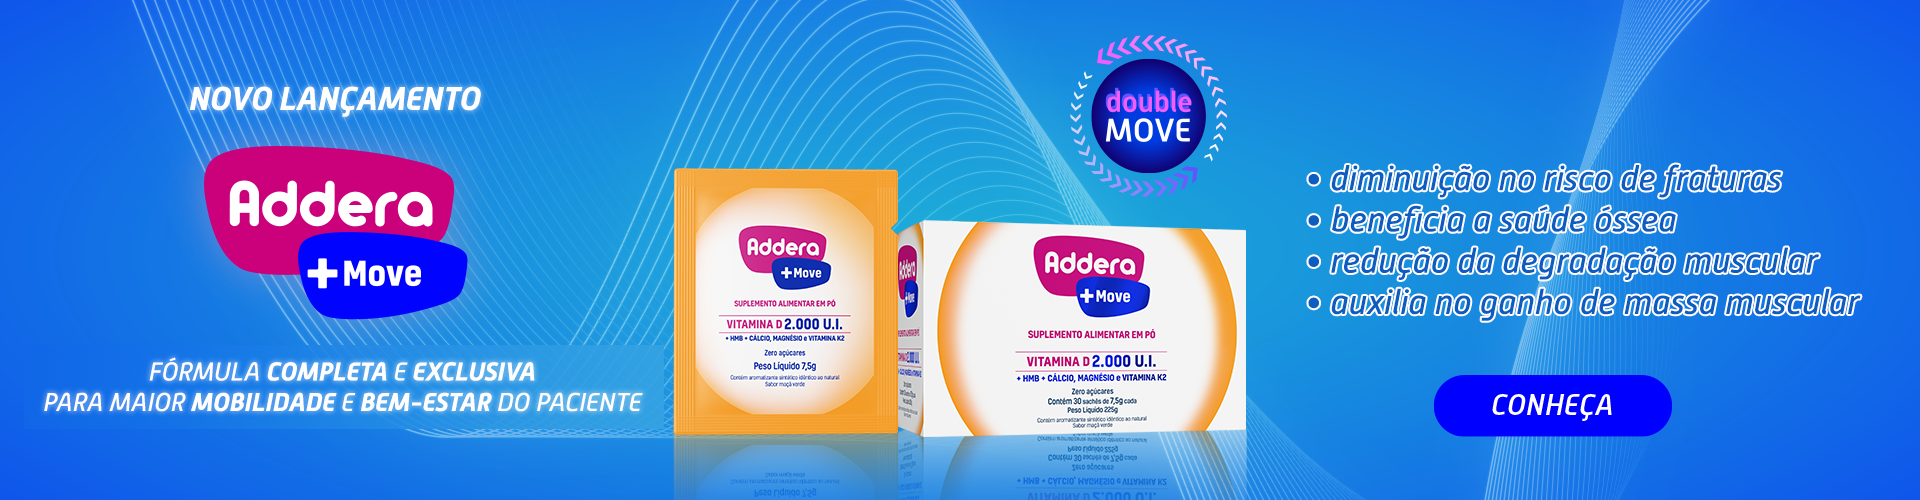 5 Addera Move